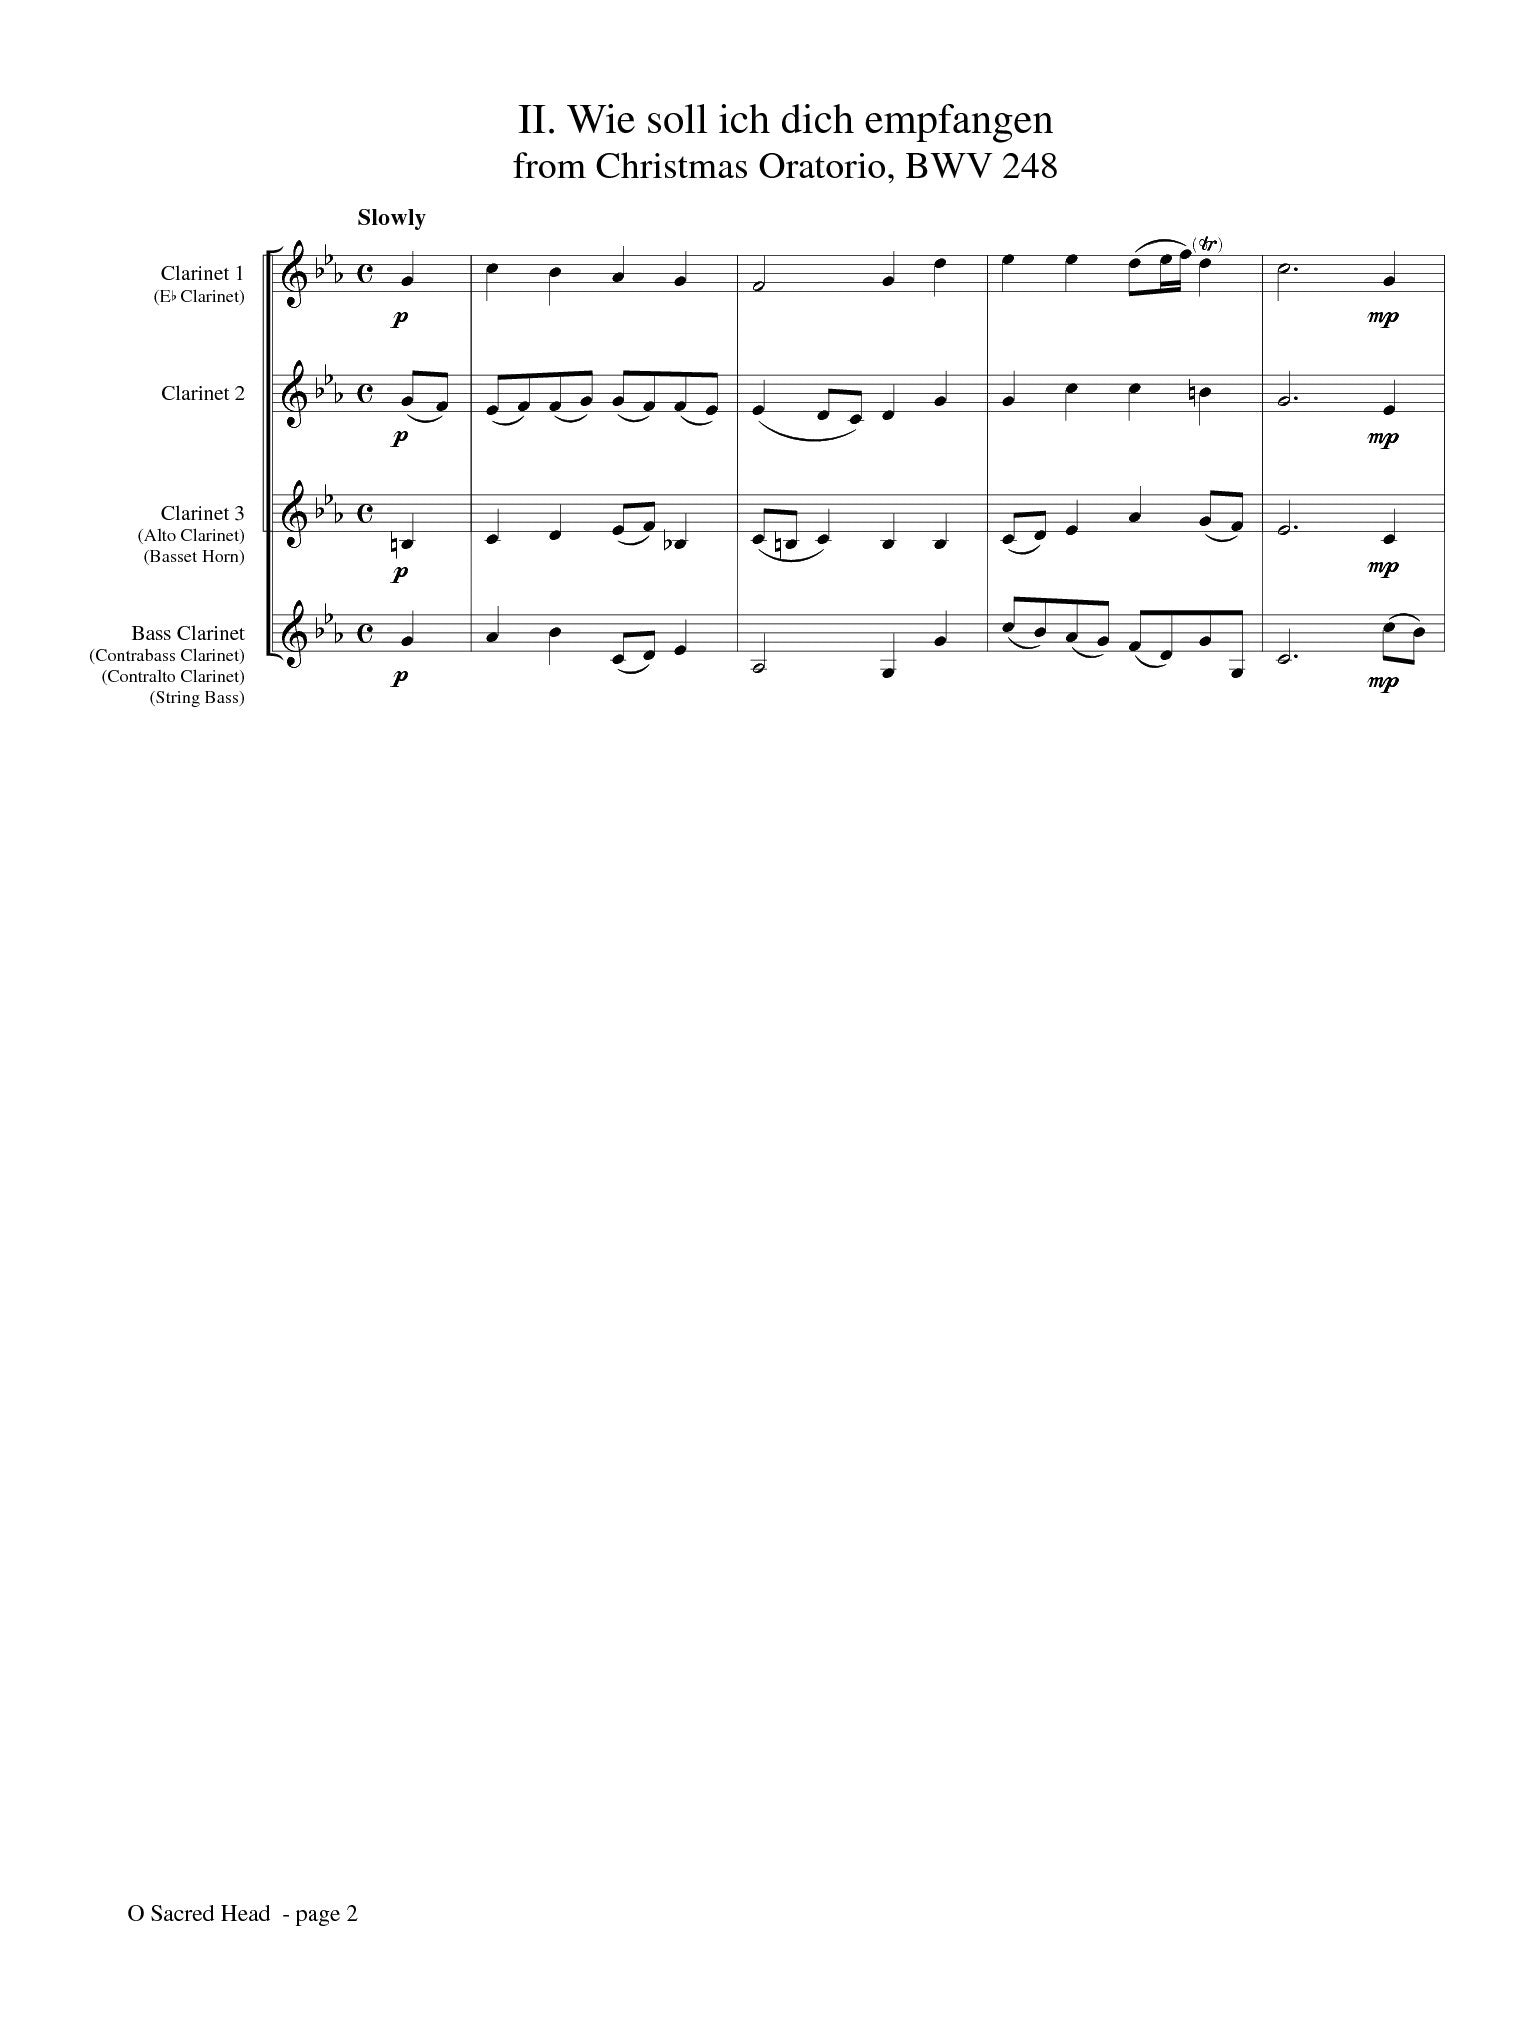 Bach (arr. Matt Johnston) - O Sacred Head for Clarinet Choir